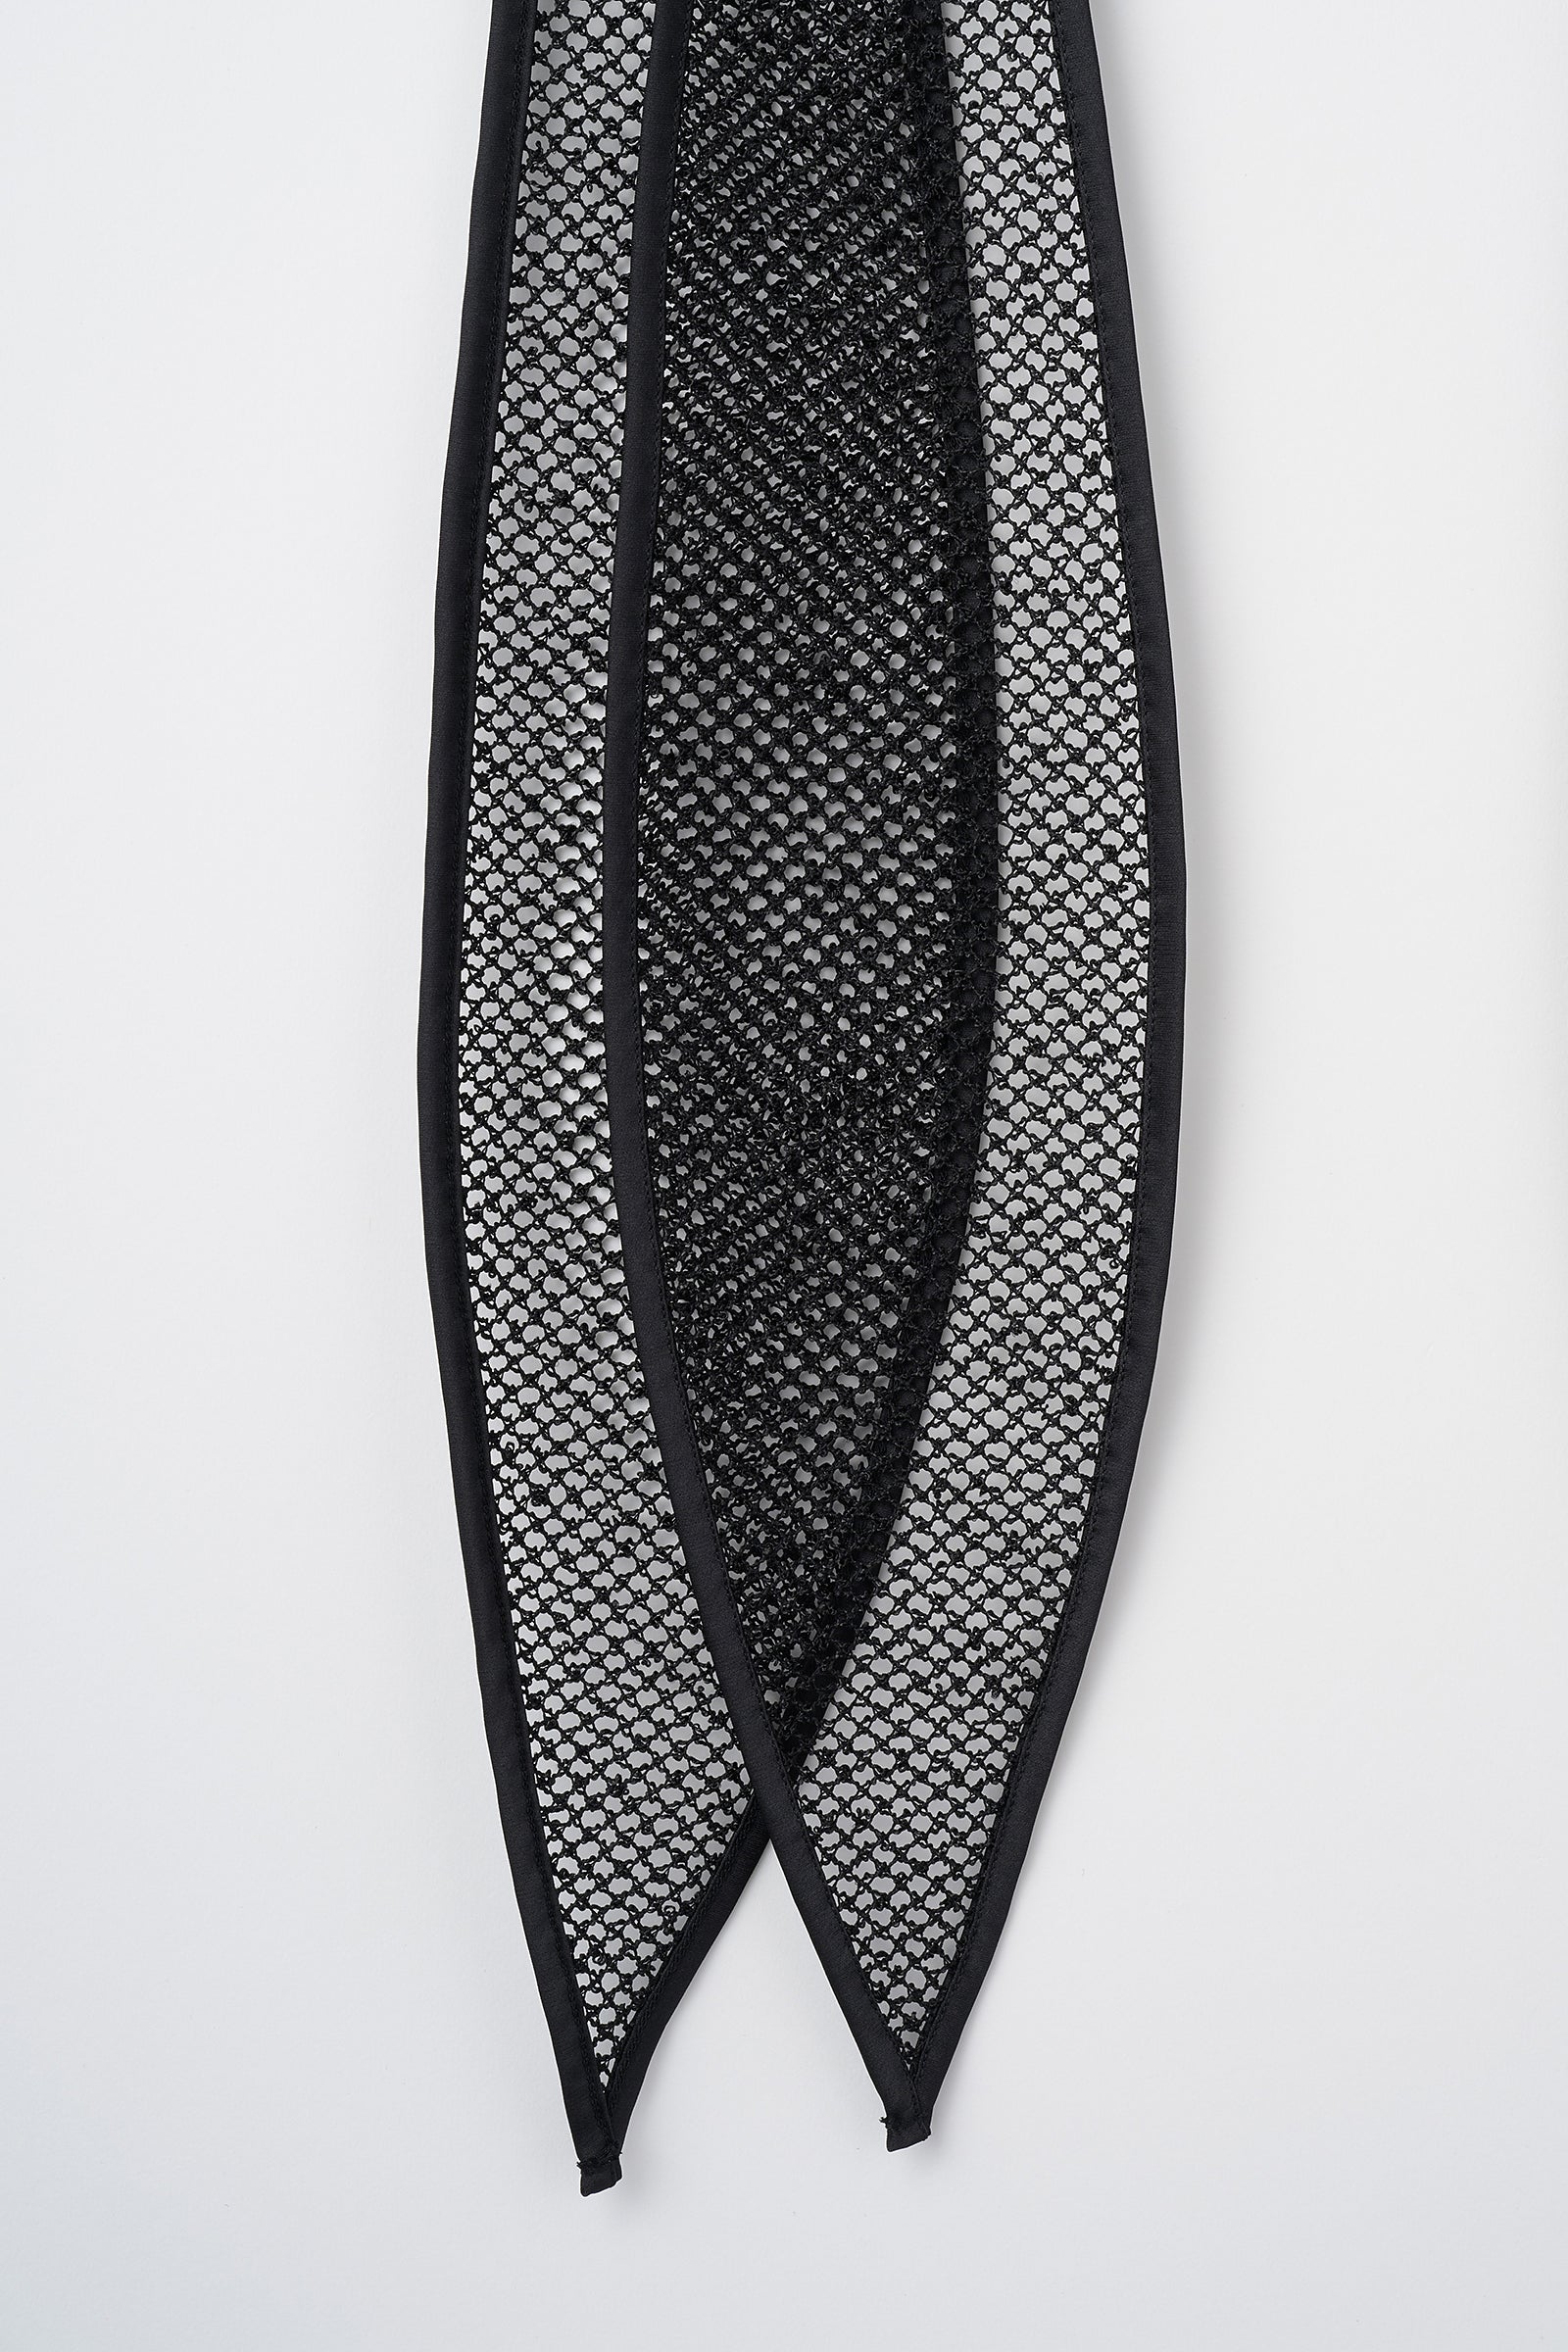 Petal mesh top (Black)